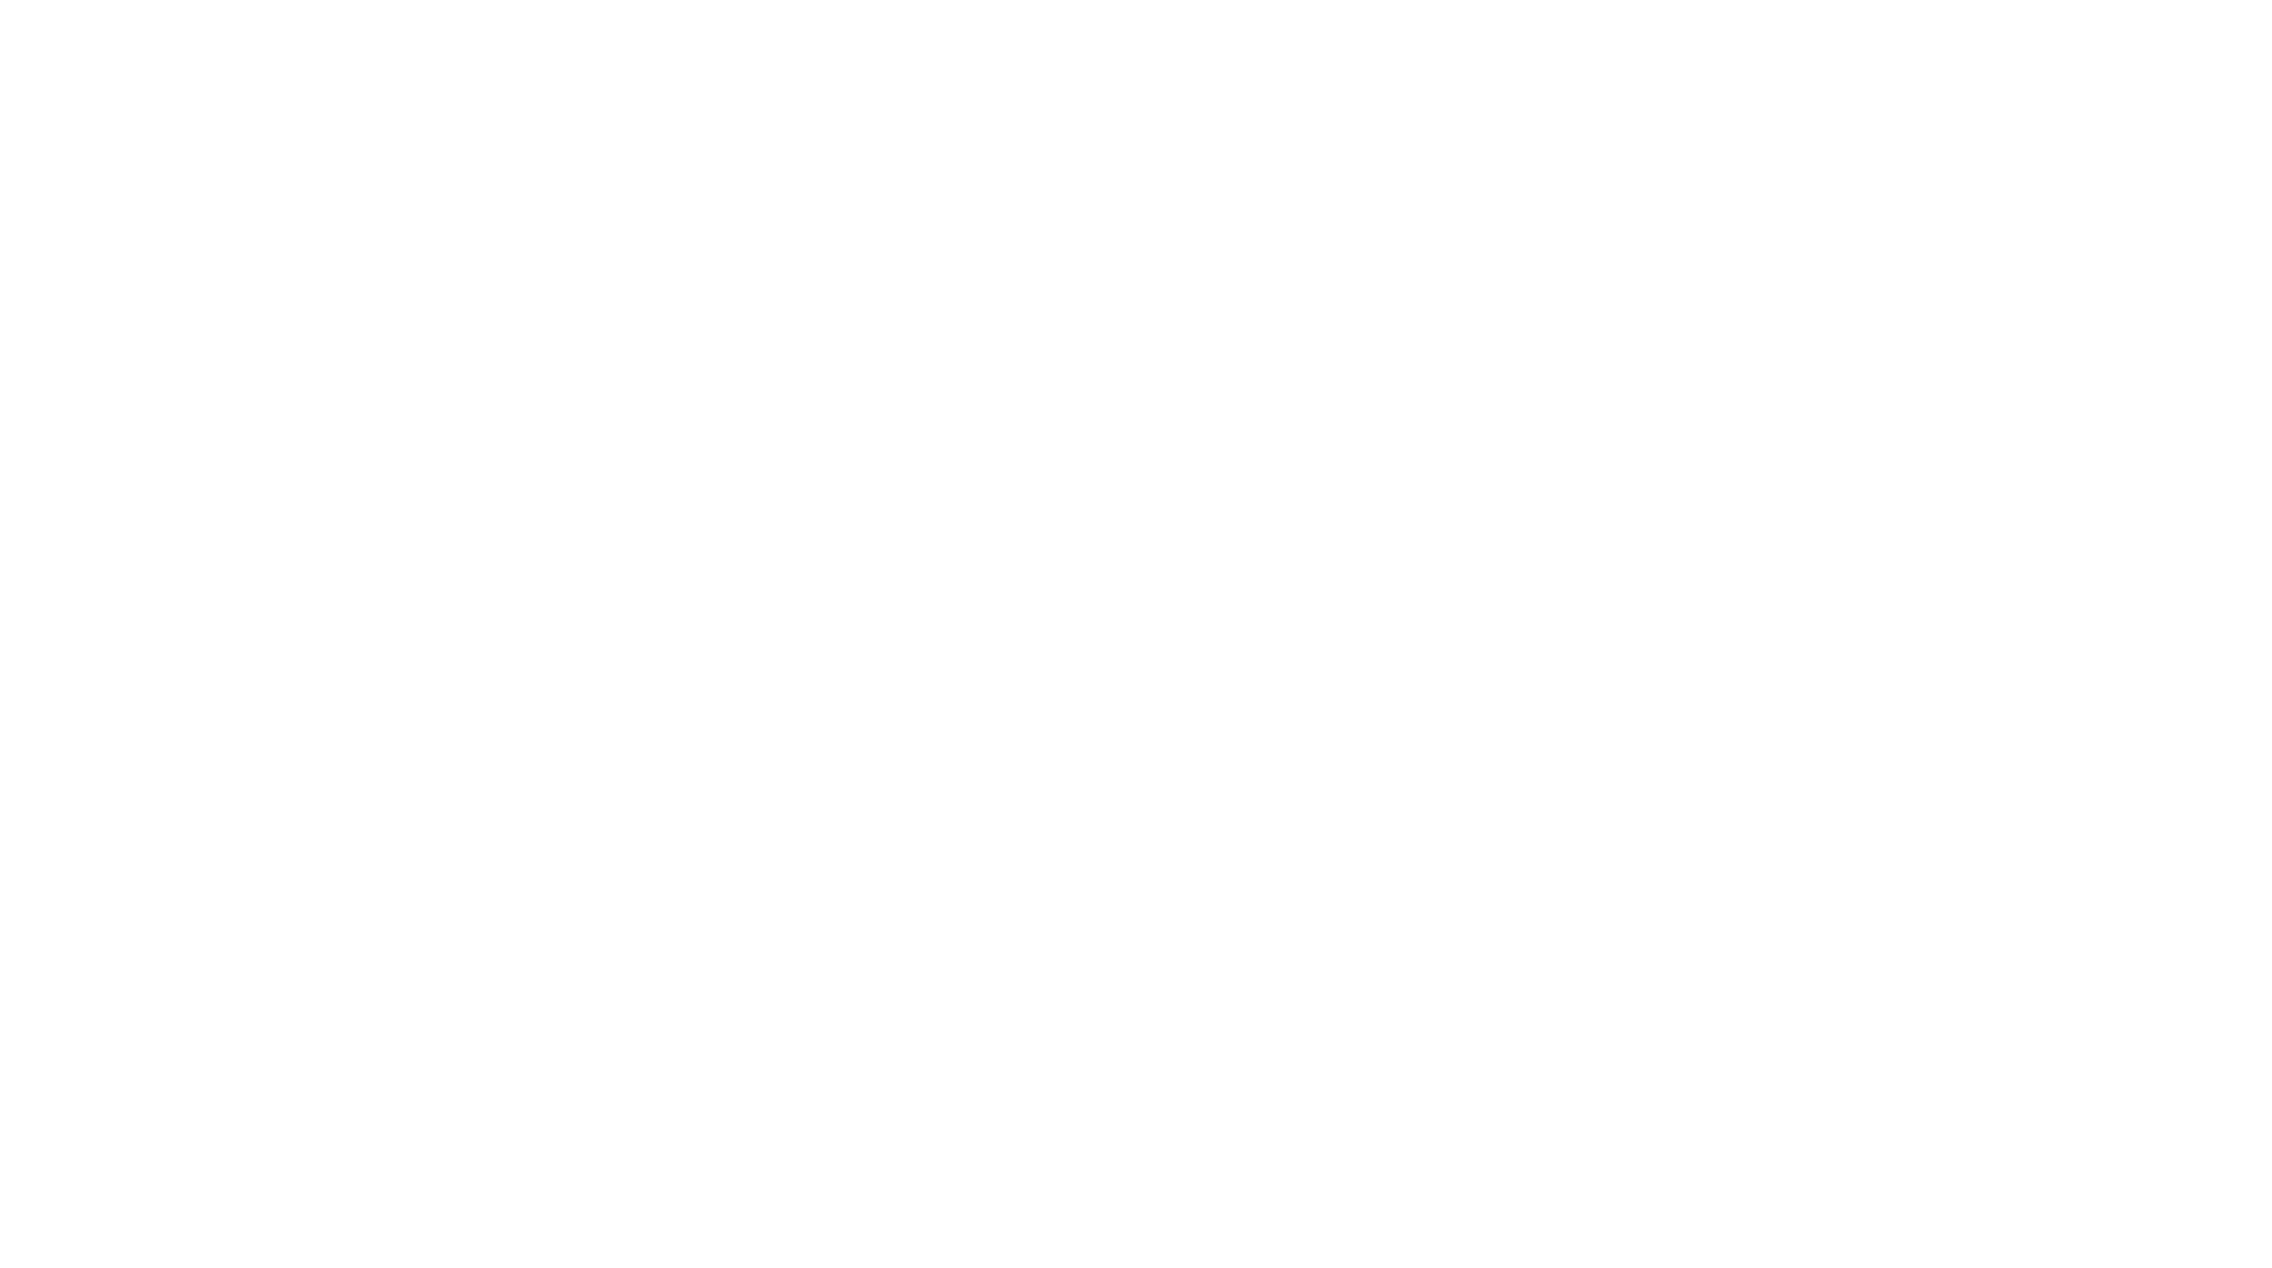 Sendcom